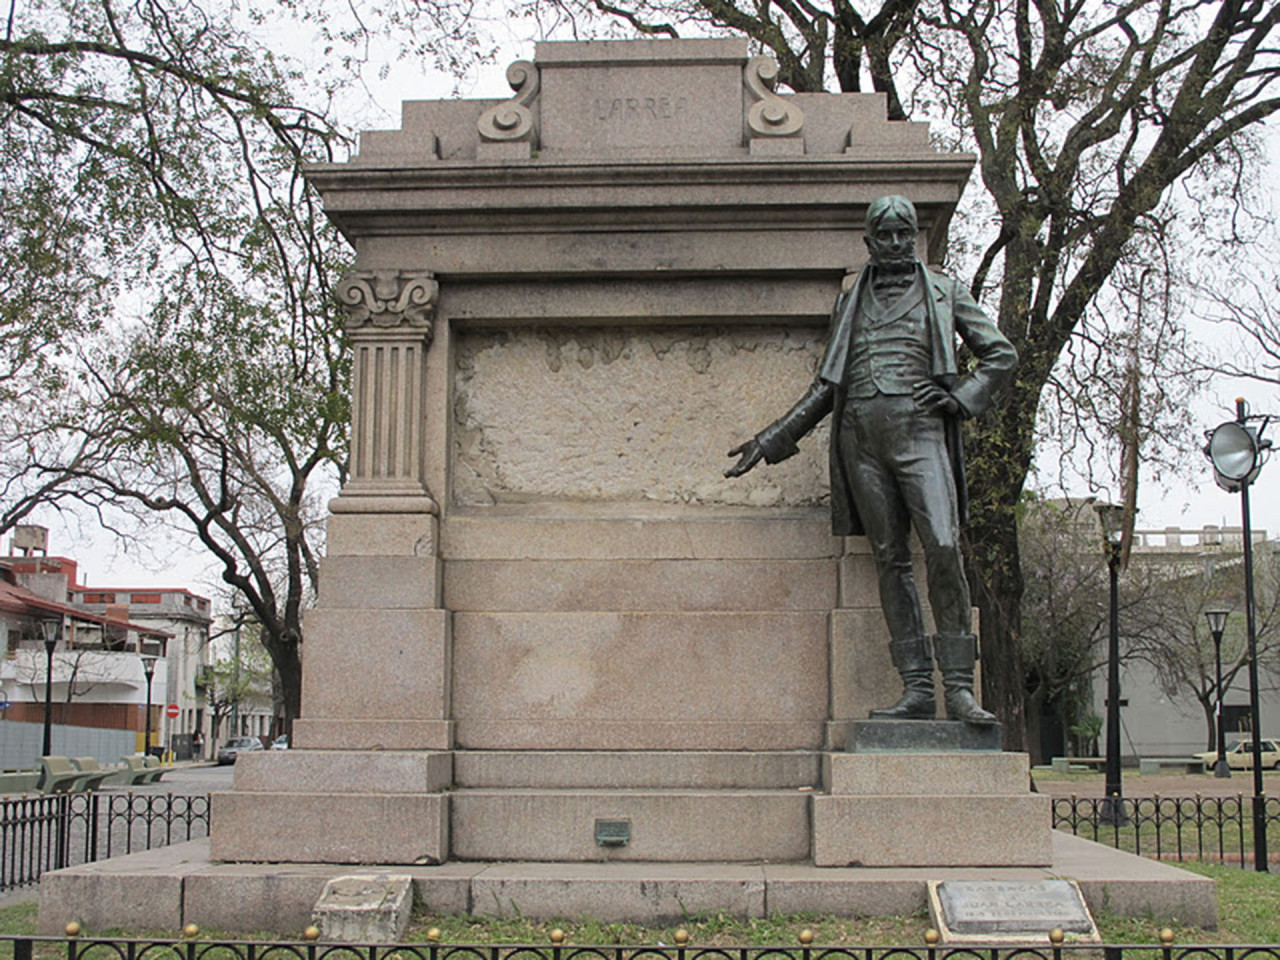 Monumento a Larrea ubicado en la plaza Herrera, barrio de Barracas